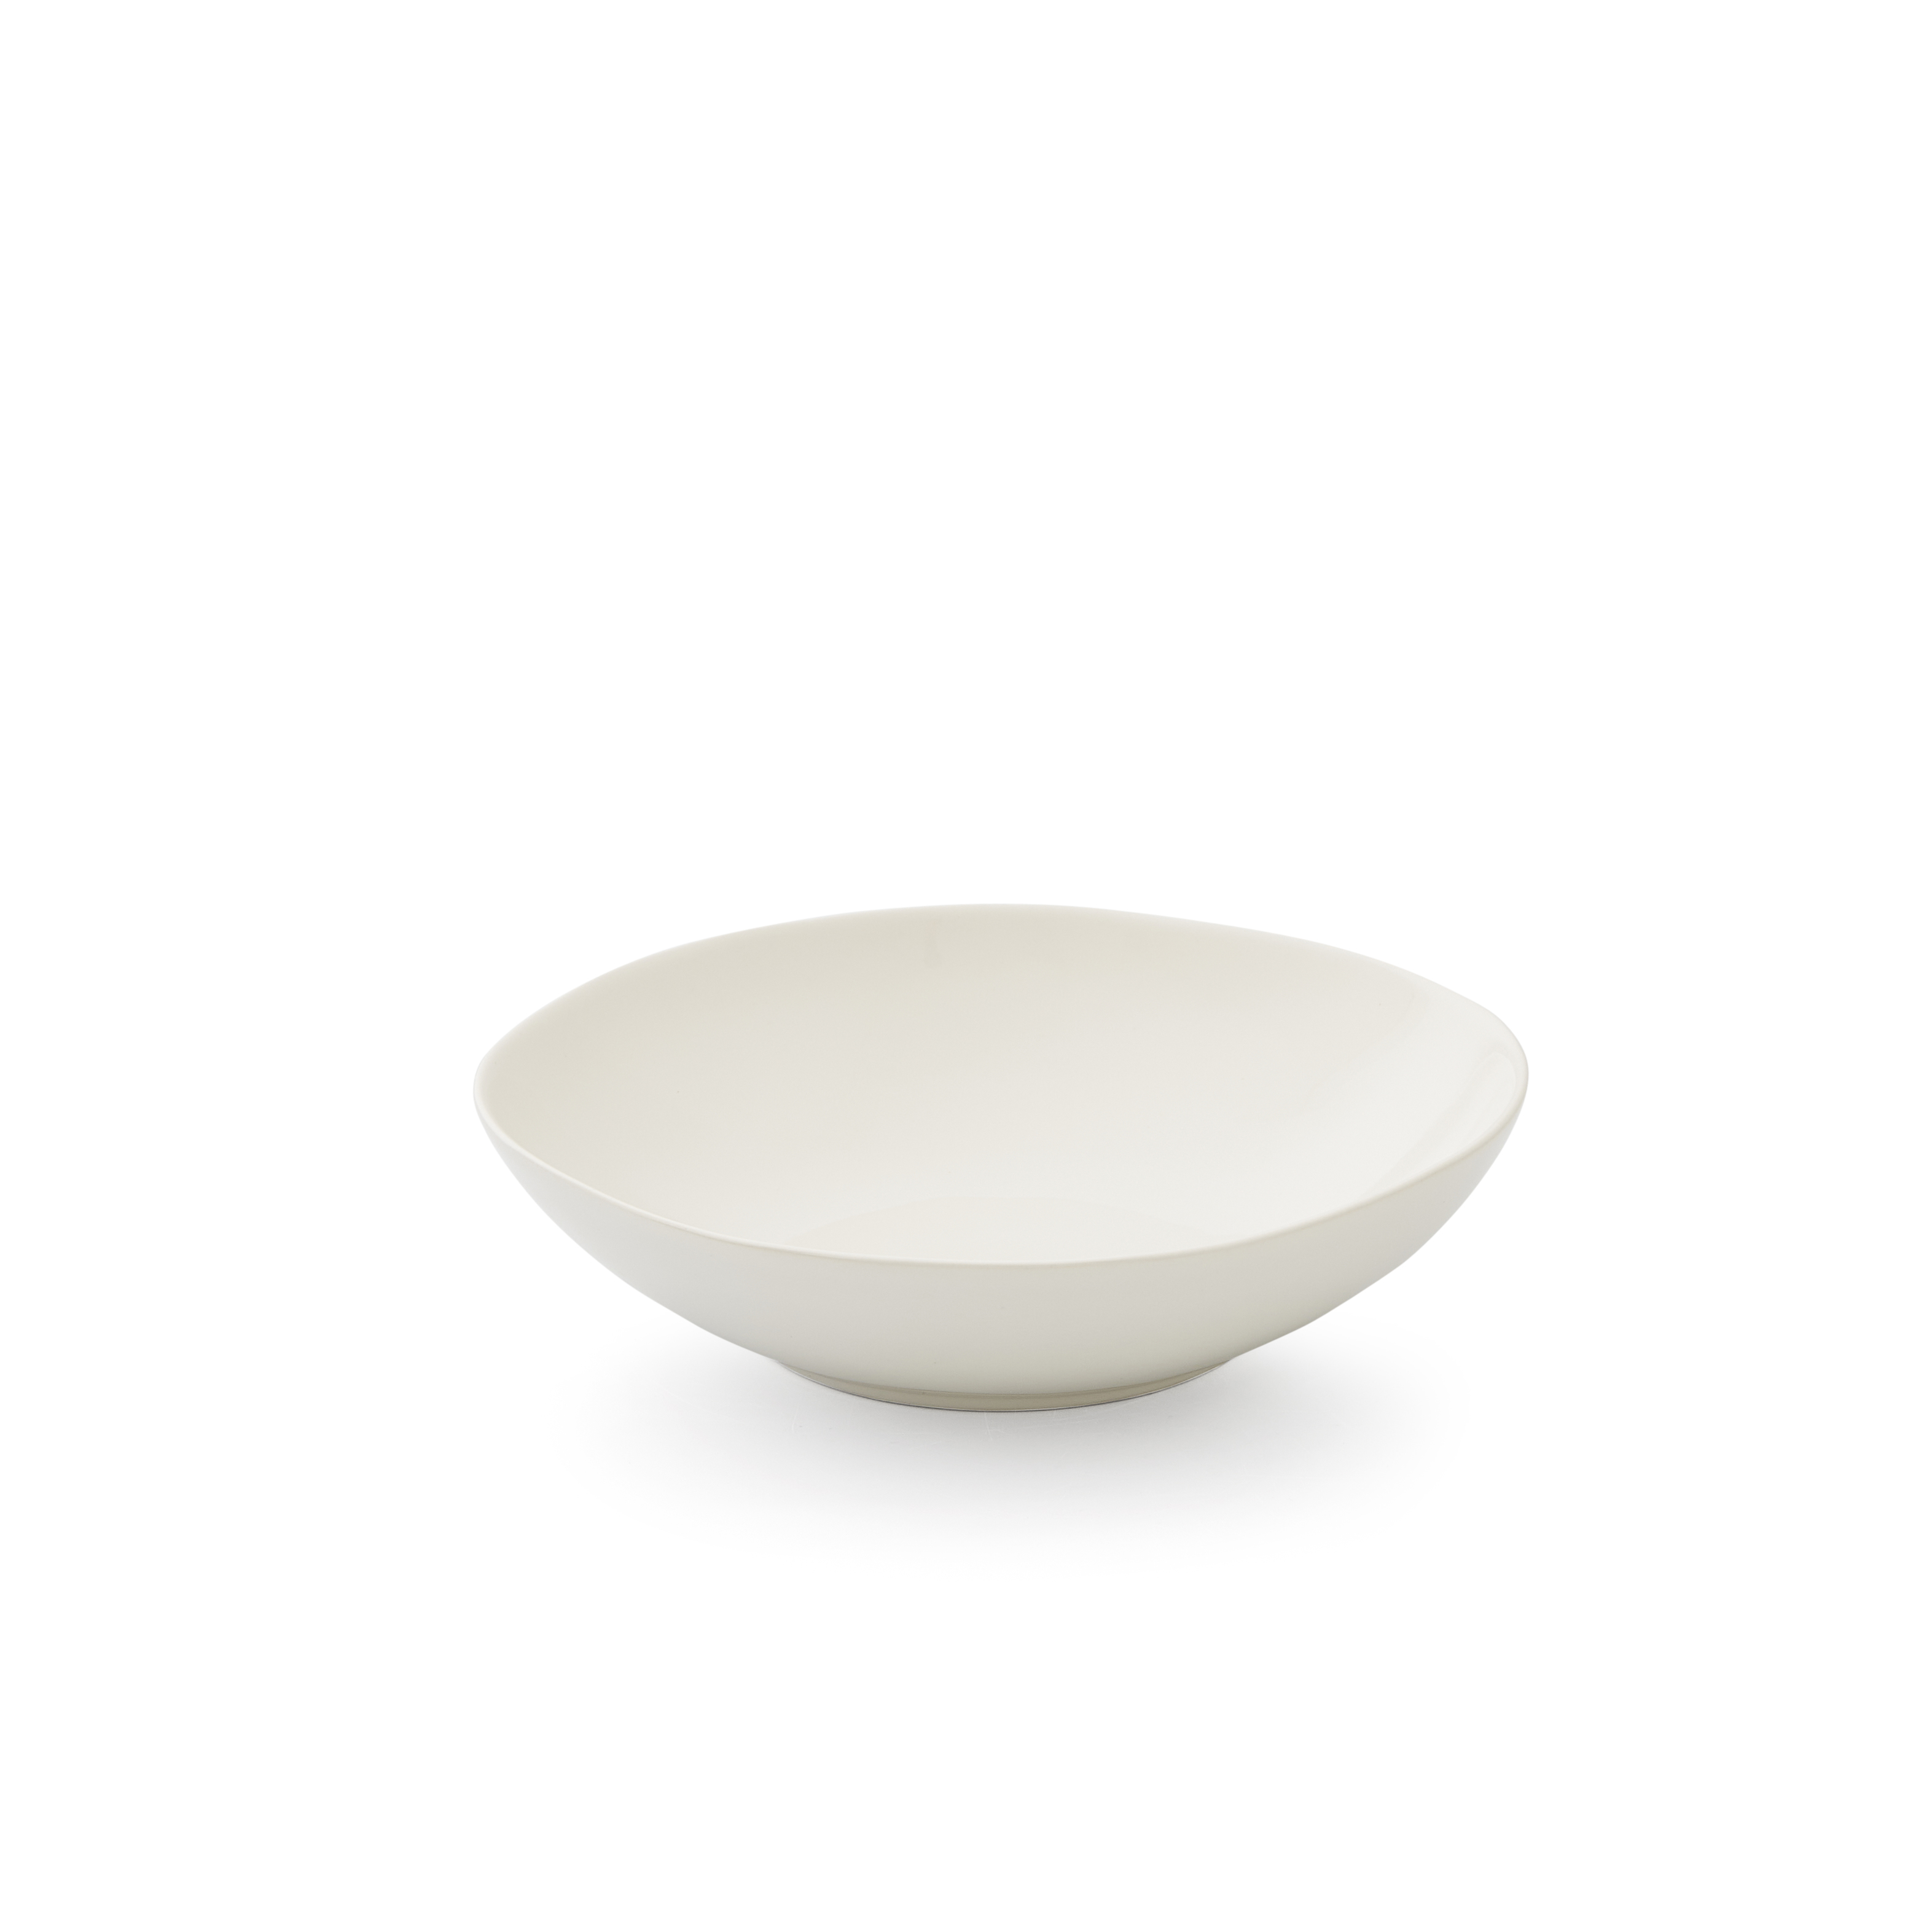 Sophie Conran Arbor Pasta Bowls, Cream image number null